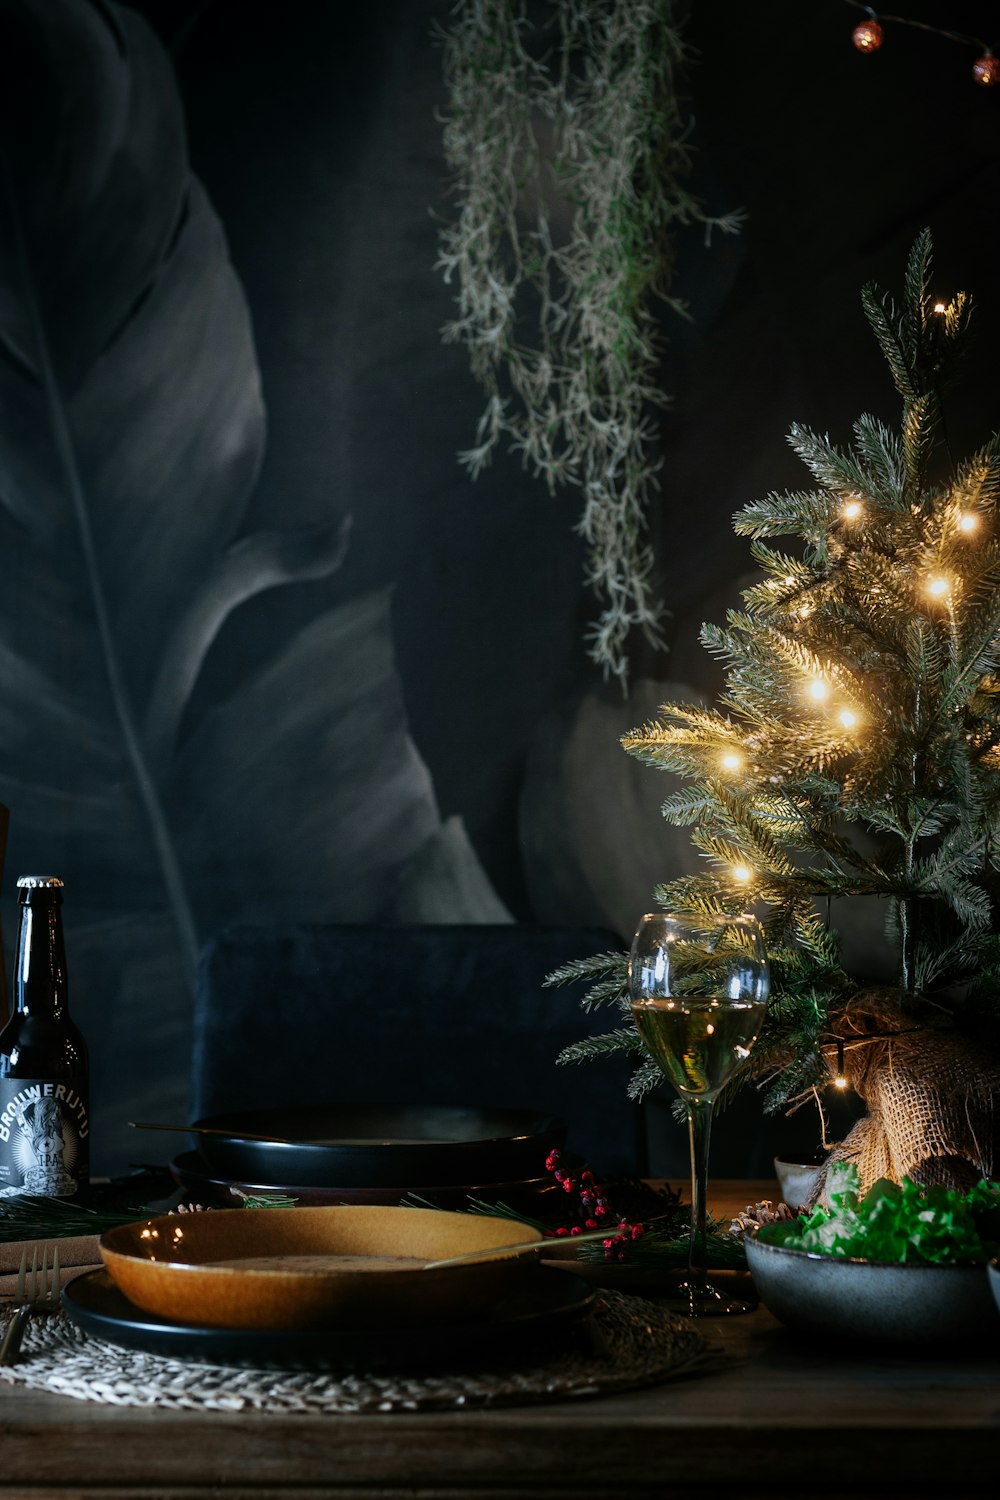 Grüner Weihnachtsbaum mit eingeschalteter Lichterkette in der Nähe des schwarzen Tisches